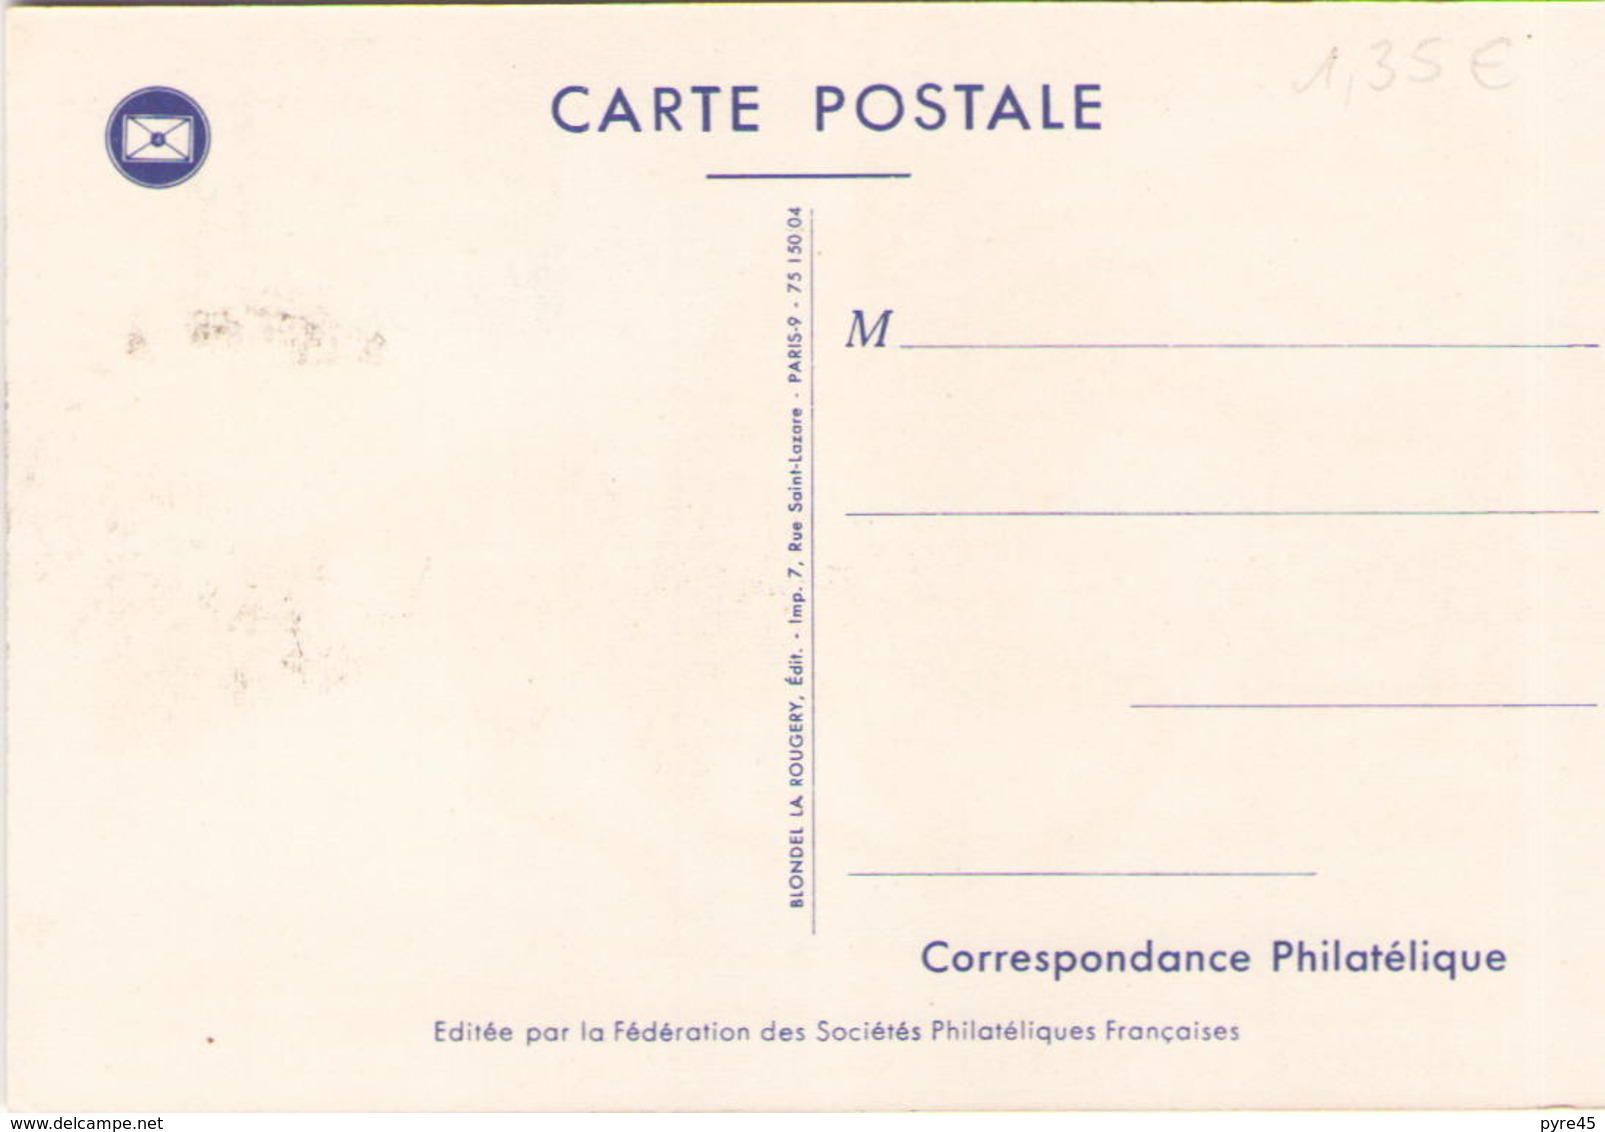 Carte Postale Du 4 Mars 1964 à Donnery " Journée Du Timbre 1964 Courrier à Cheval " - Cachets Commémoratifs